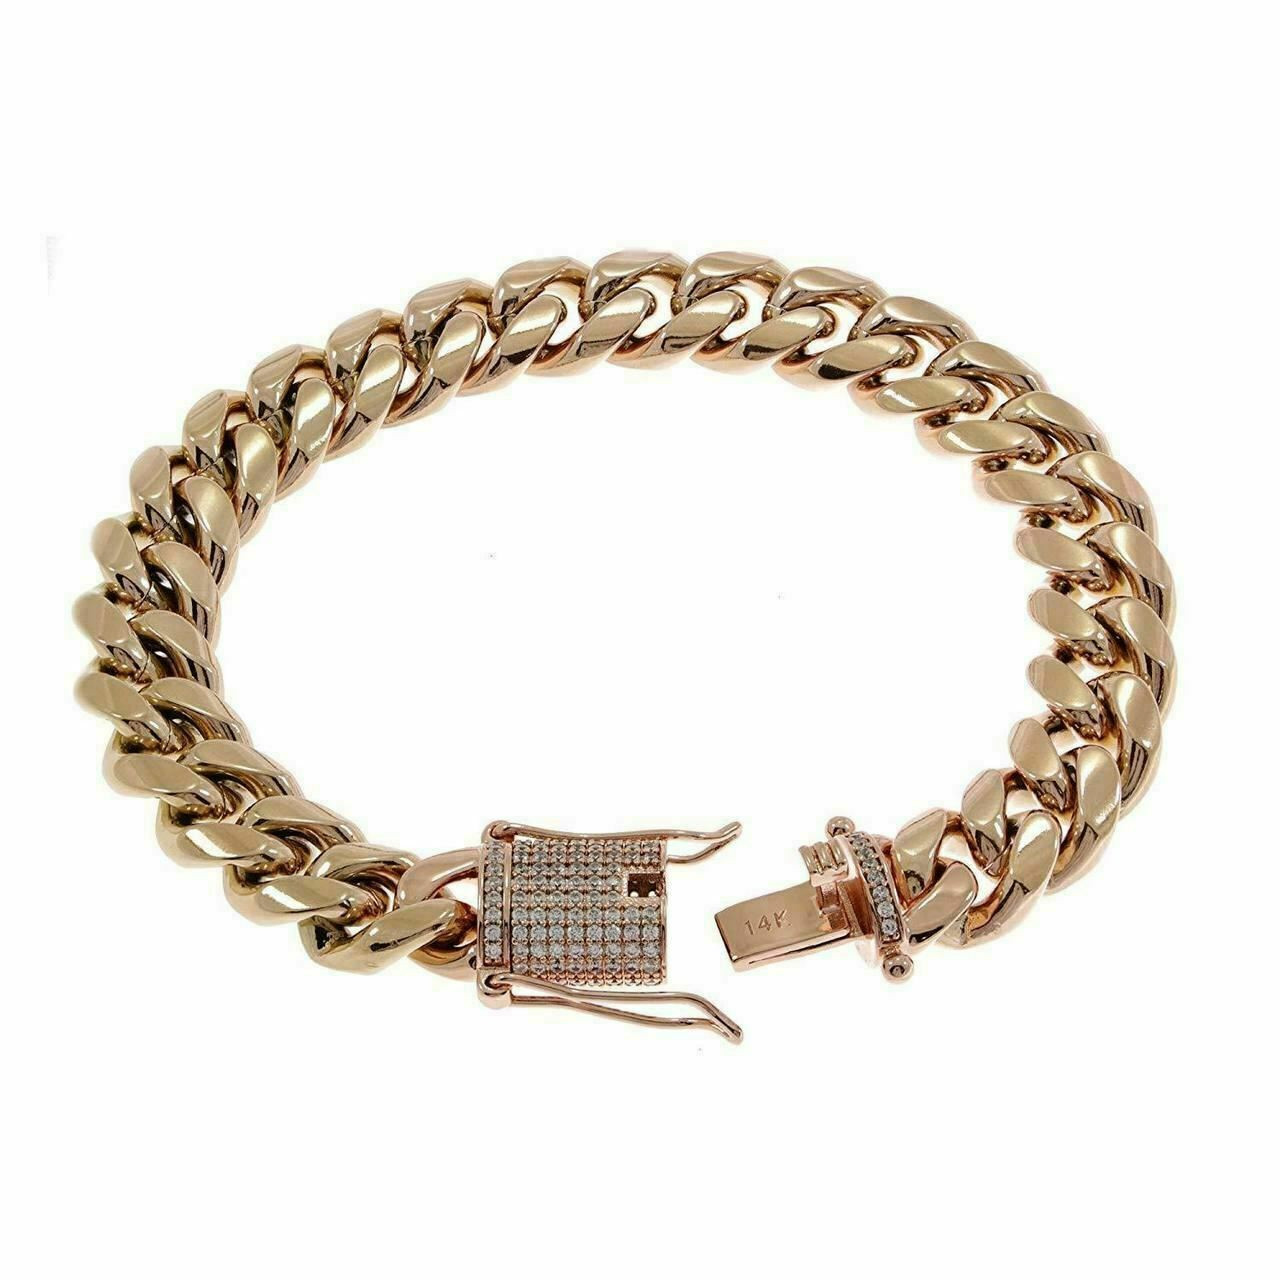 Twistedpendant Men's Cuban Link Bracelet Chain